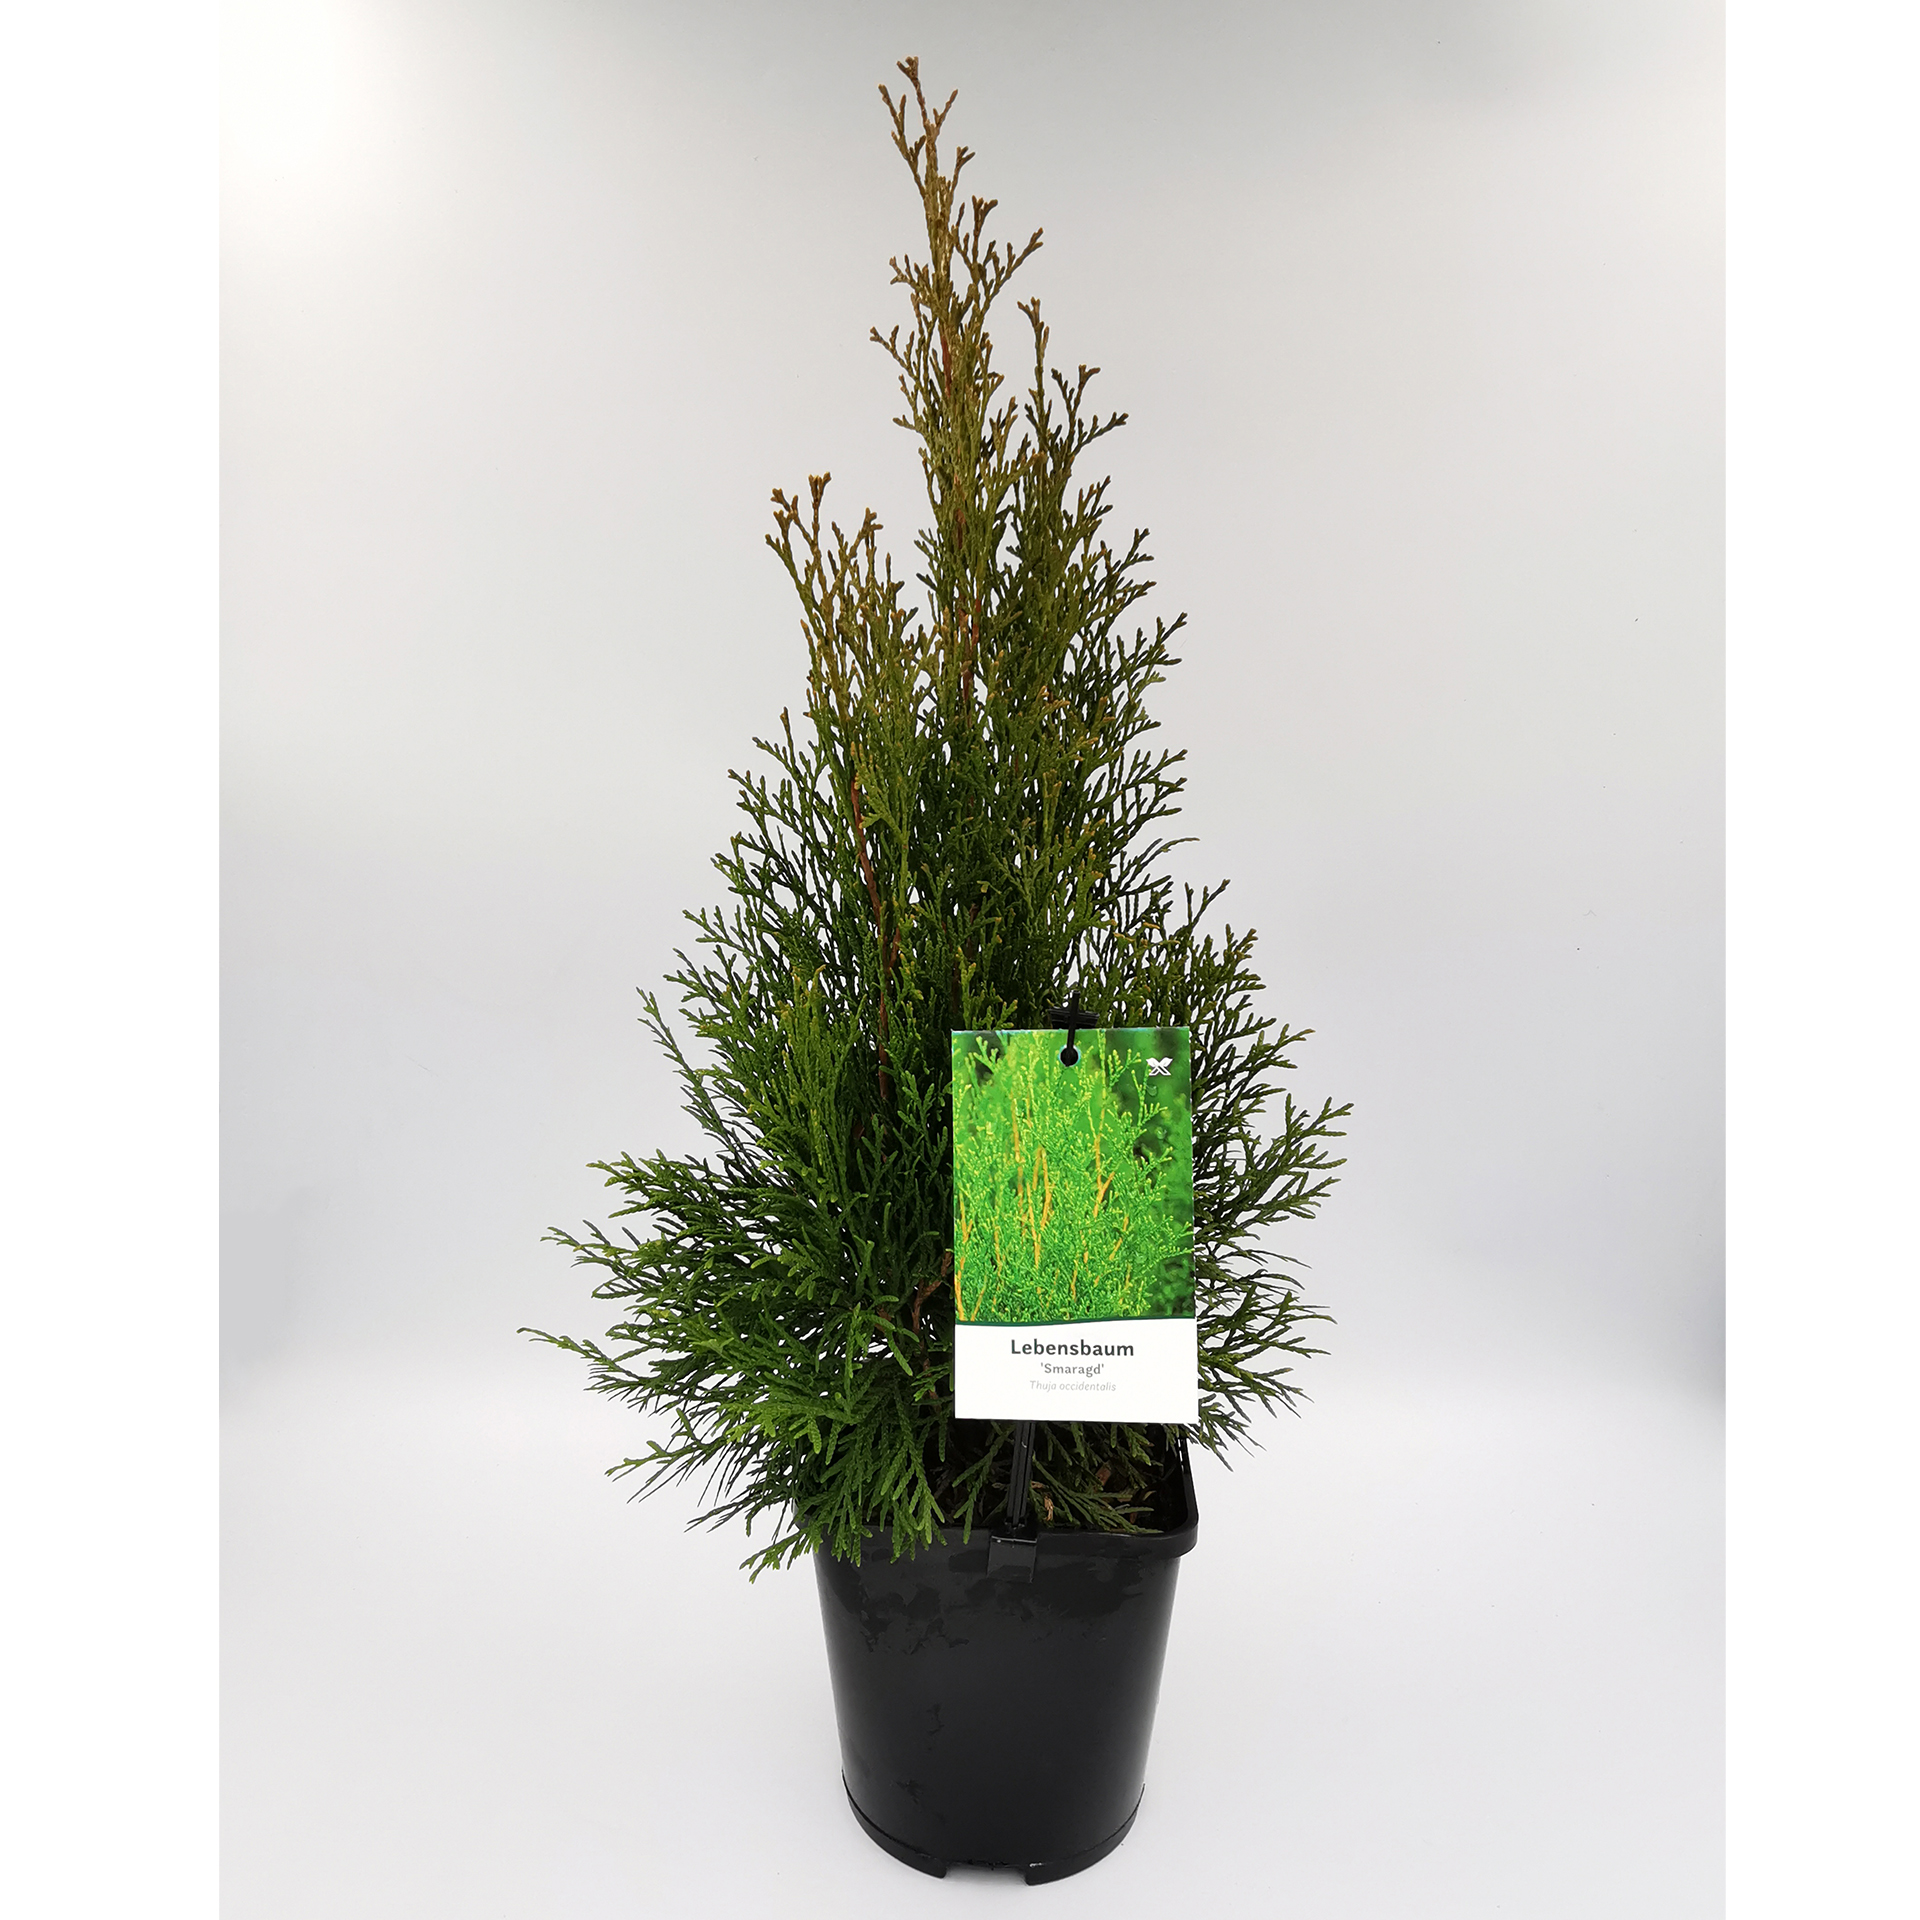 Thuja / Lebensbaum - Thuja occidentalis 'Smaragd', C1,5 20-30cm